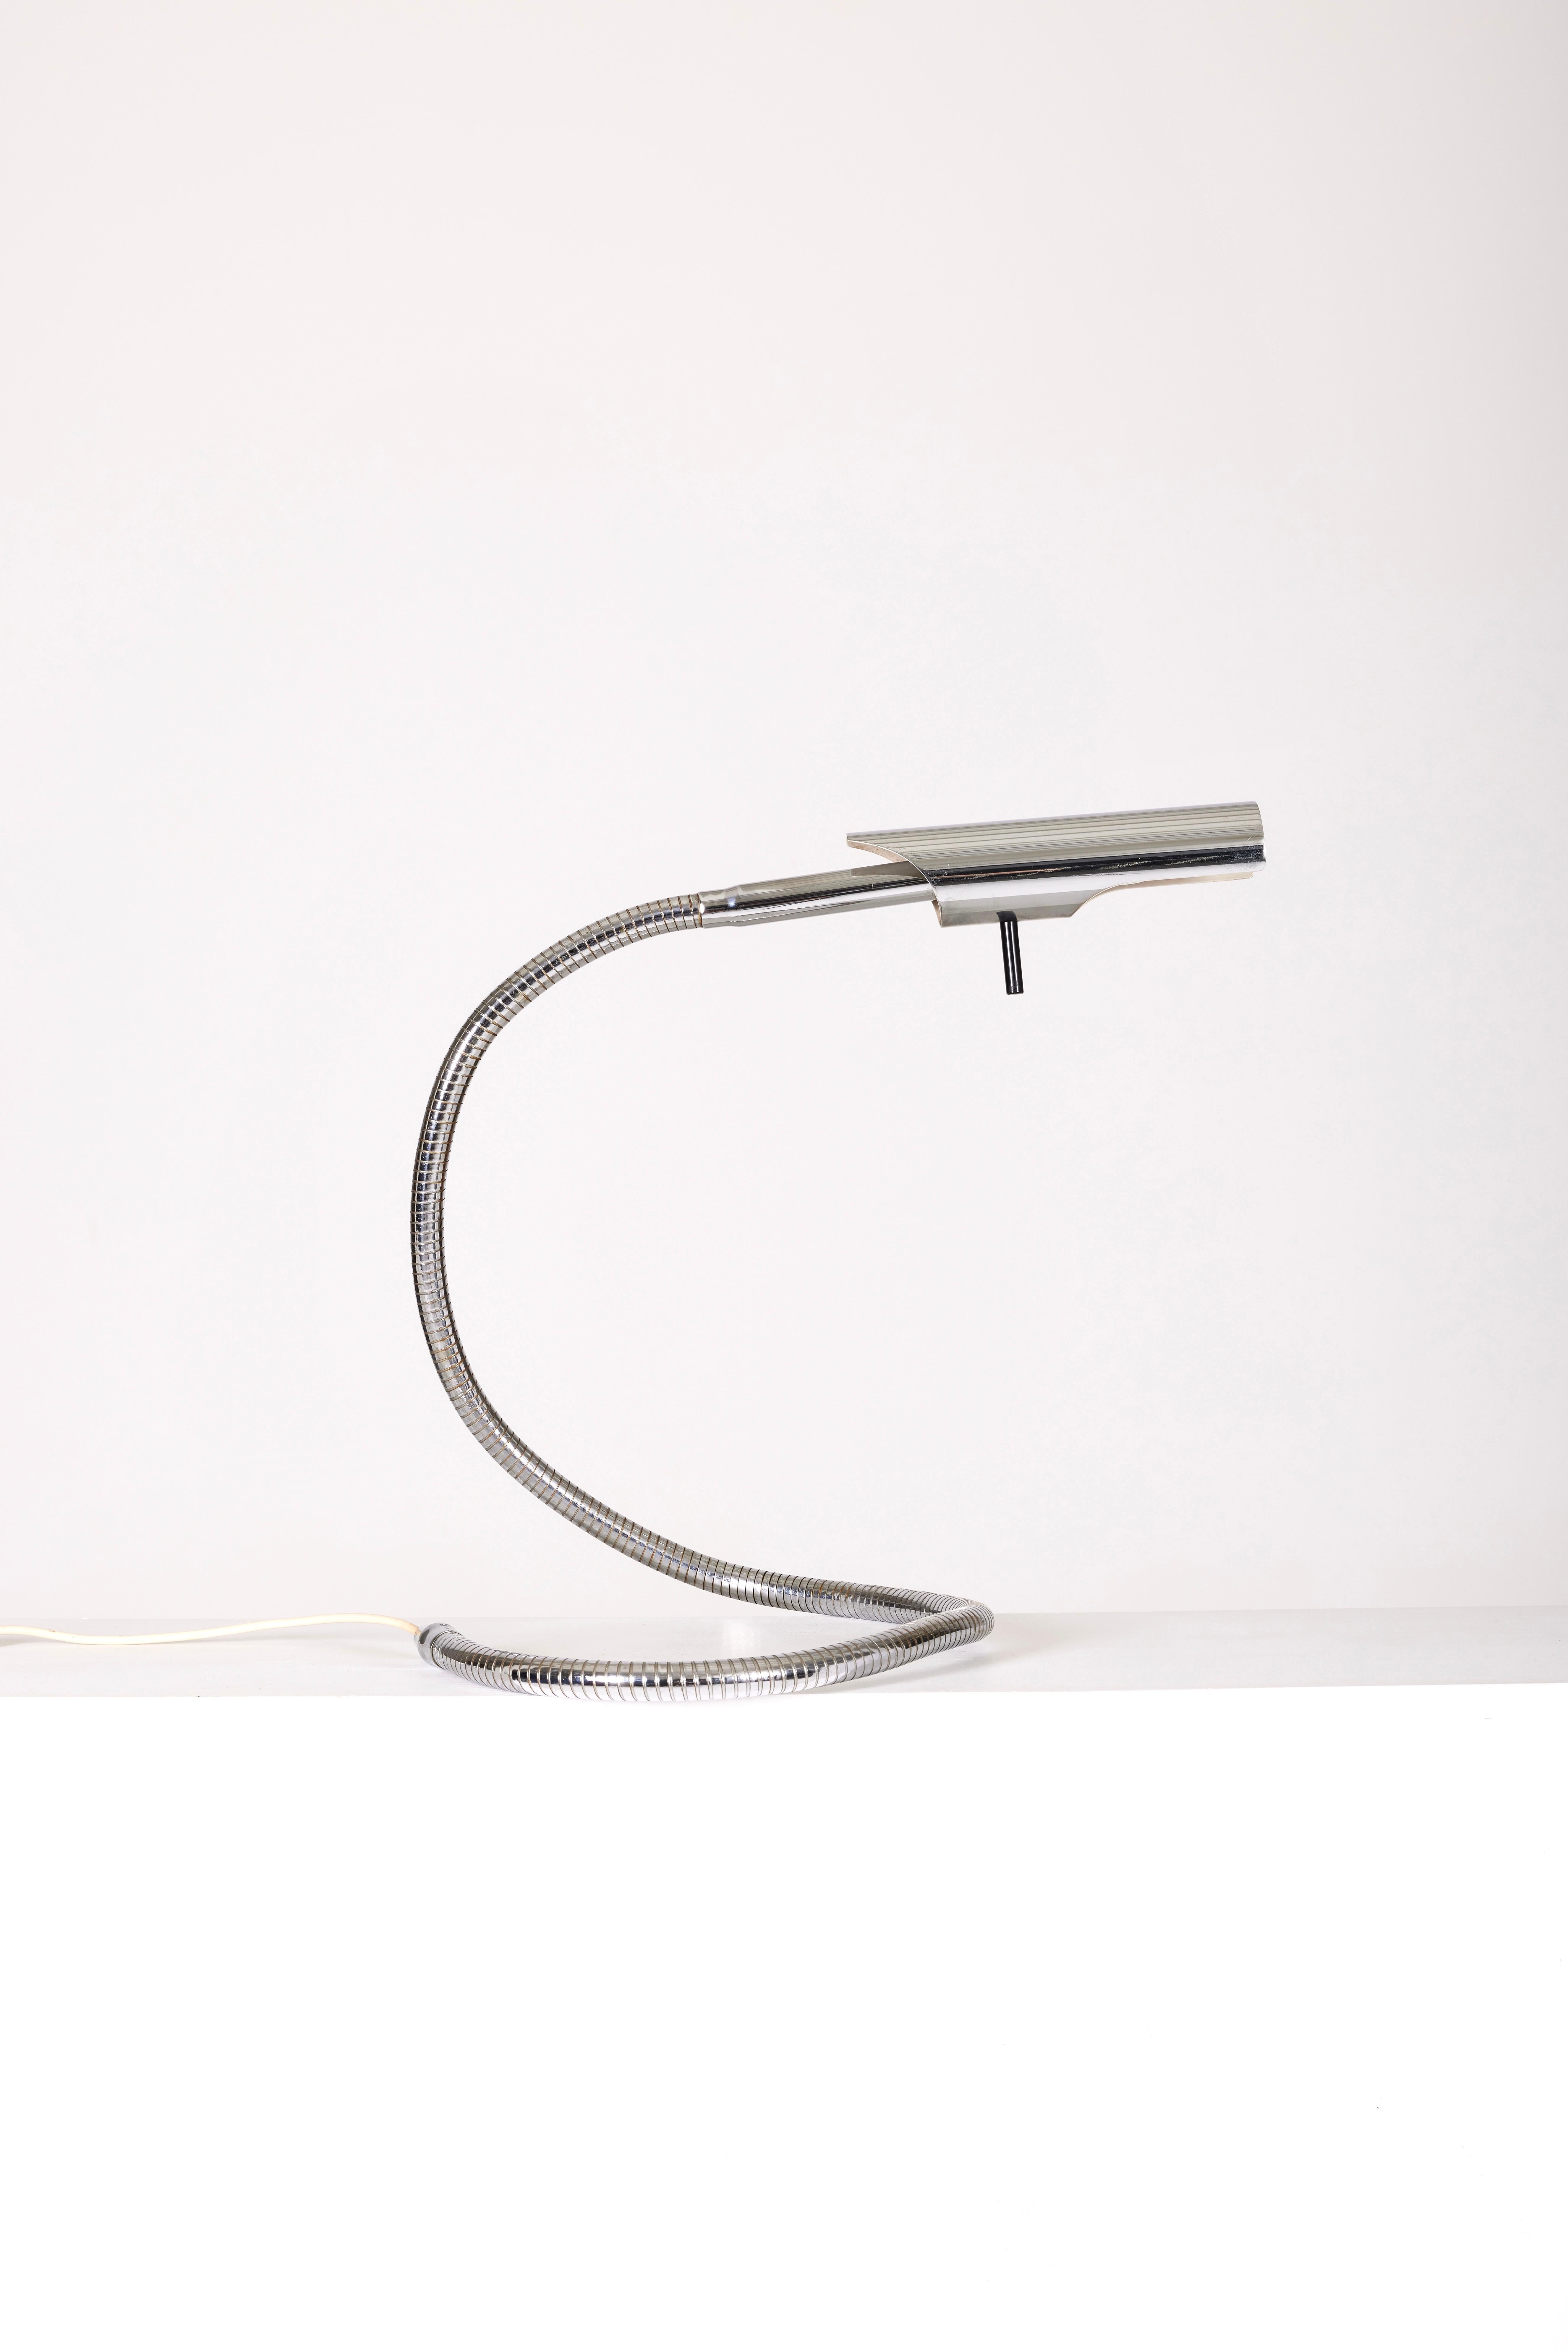 Etienne Fermigier Aluminum Table Lamp For Sale 3